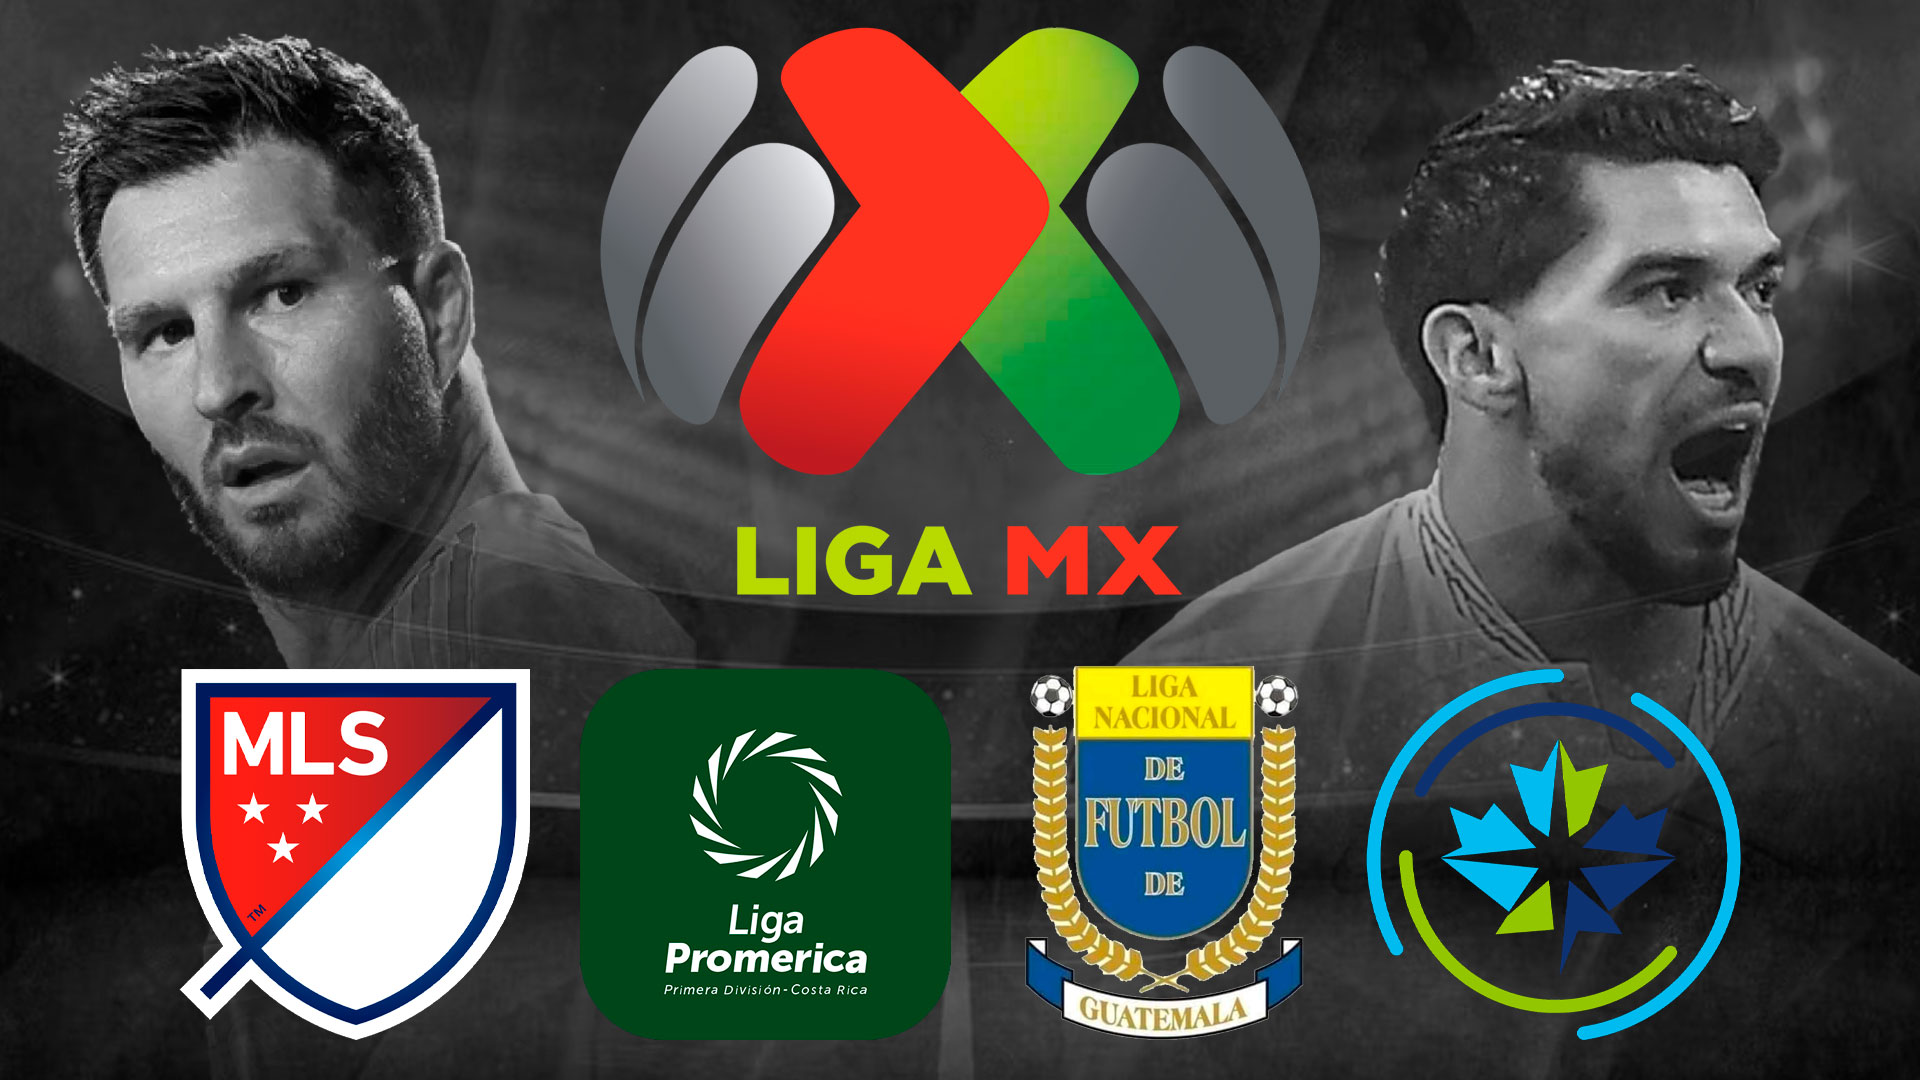 El futbol mexicano se impone: Liga MX conquista el primer lugar en el ranking de la Concacaf - Infobae